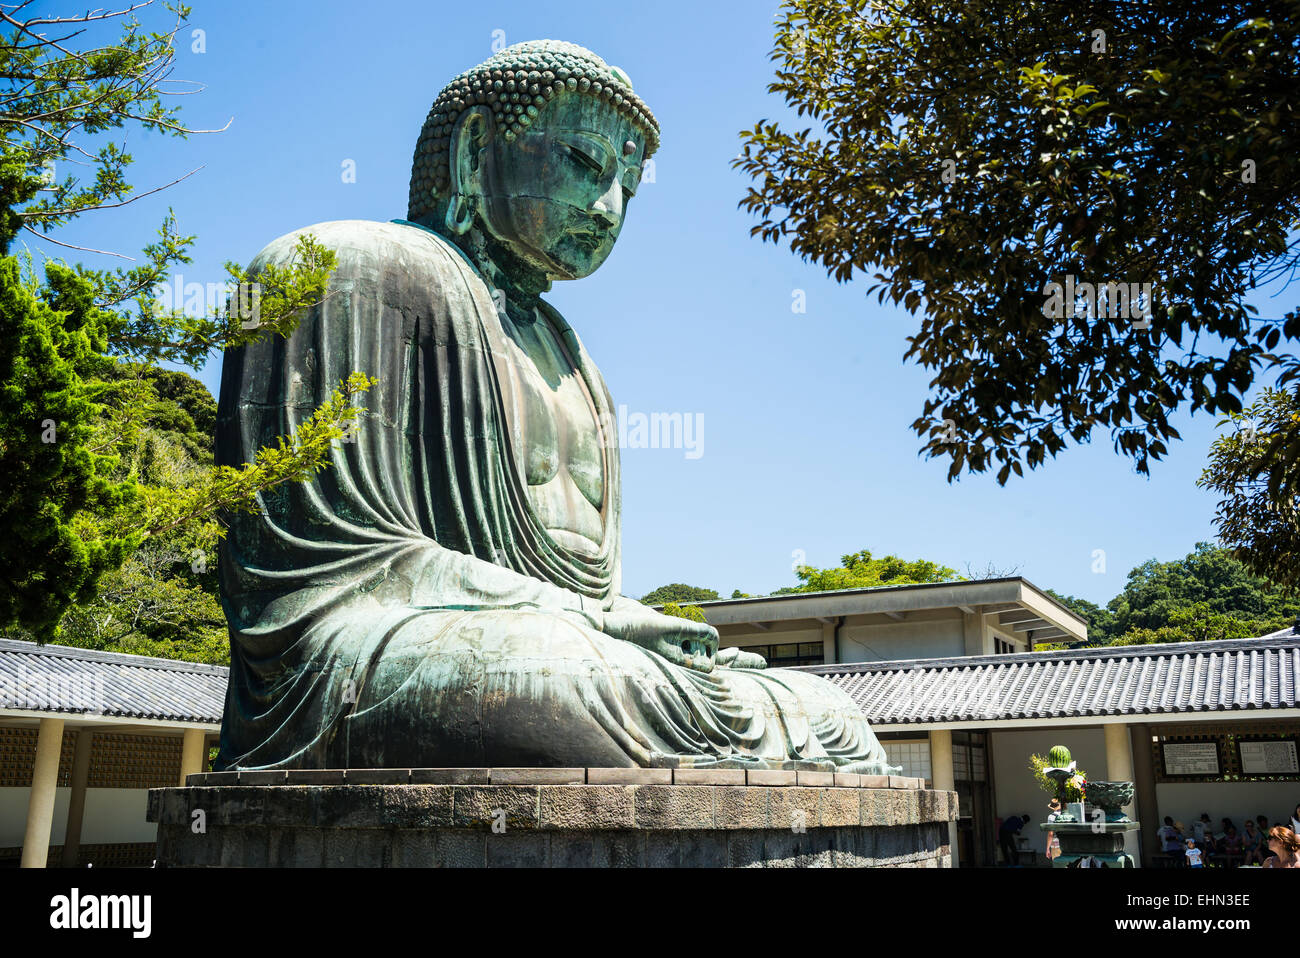 The Great Buddha of Kamakura, Japan. Stock Photo